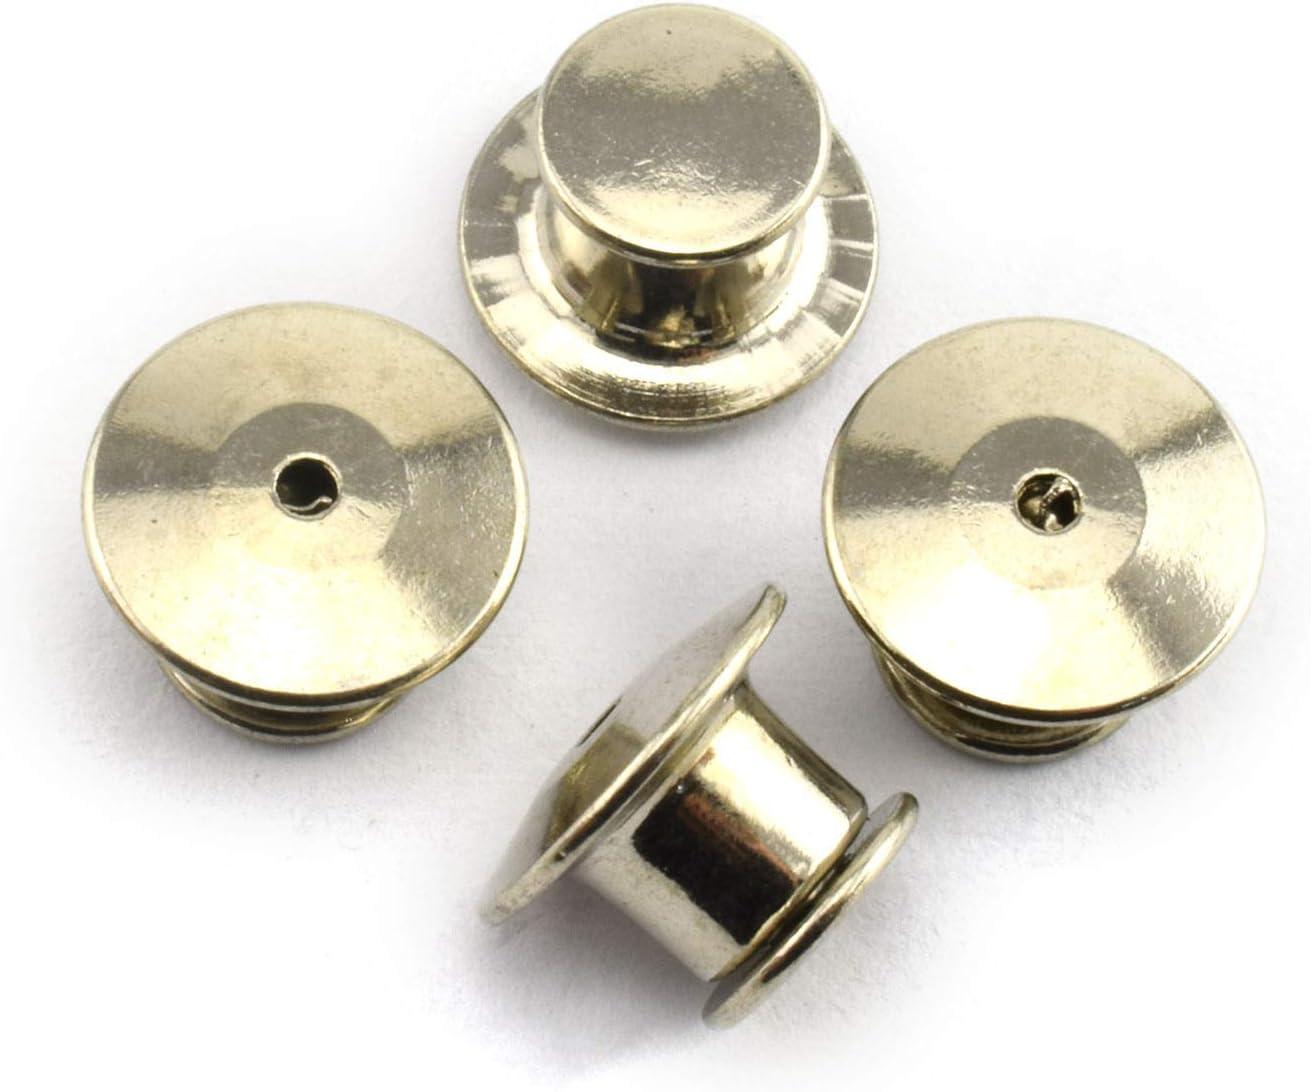 metal pin keepers Metal Locking Keepers Lapel Pin Backs Locking